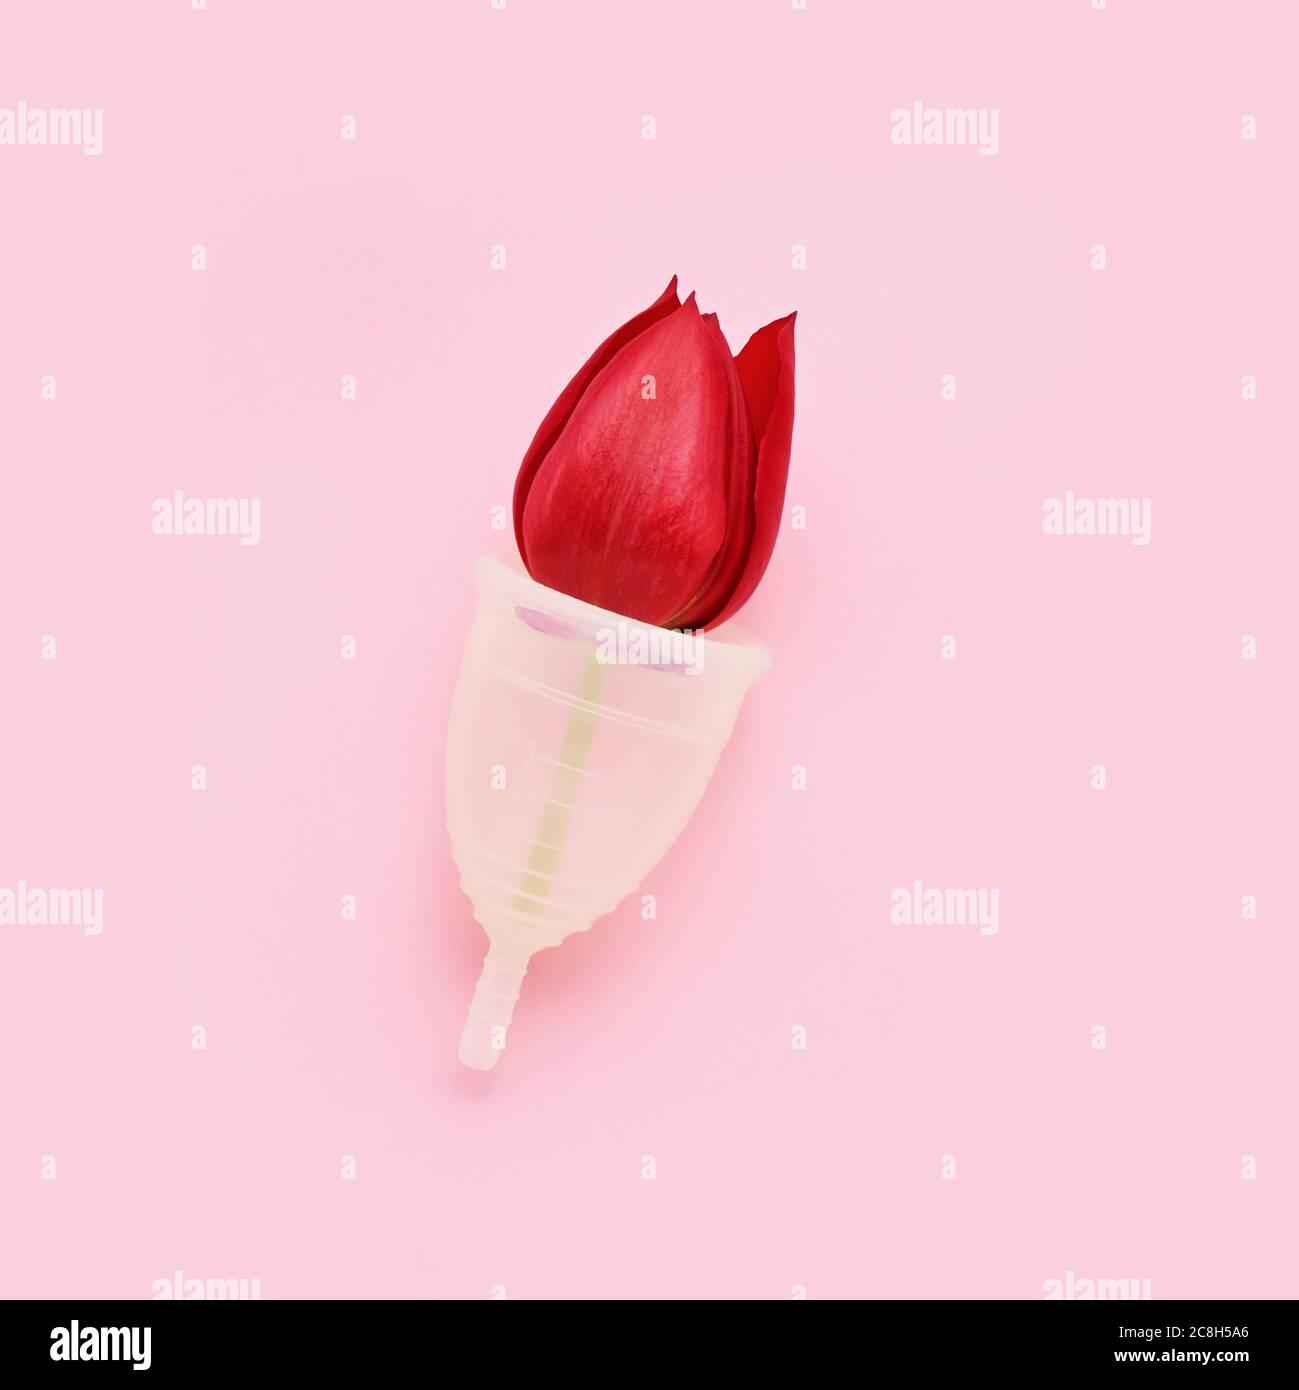 Wiederverwendbarer Menstruationstasse mit roter Tulpe innen auf rosa Hintergrund. Alternative weibliche Hygiene-Produkt während der Periode. Frauengesundheitskonzept. Keine Wa Stockfoto